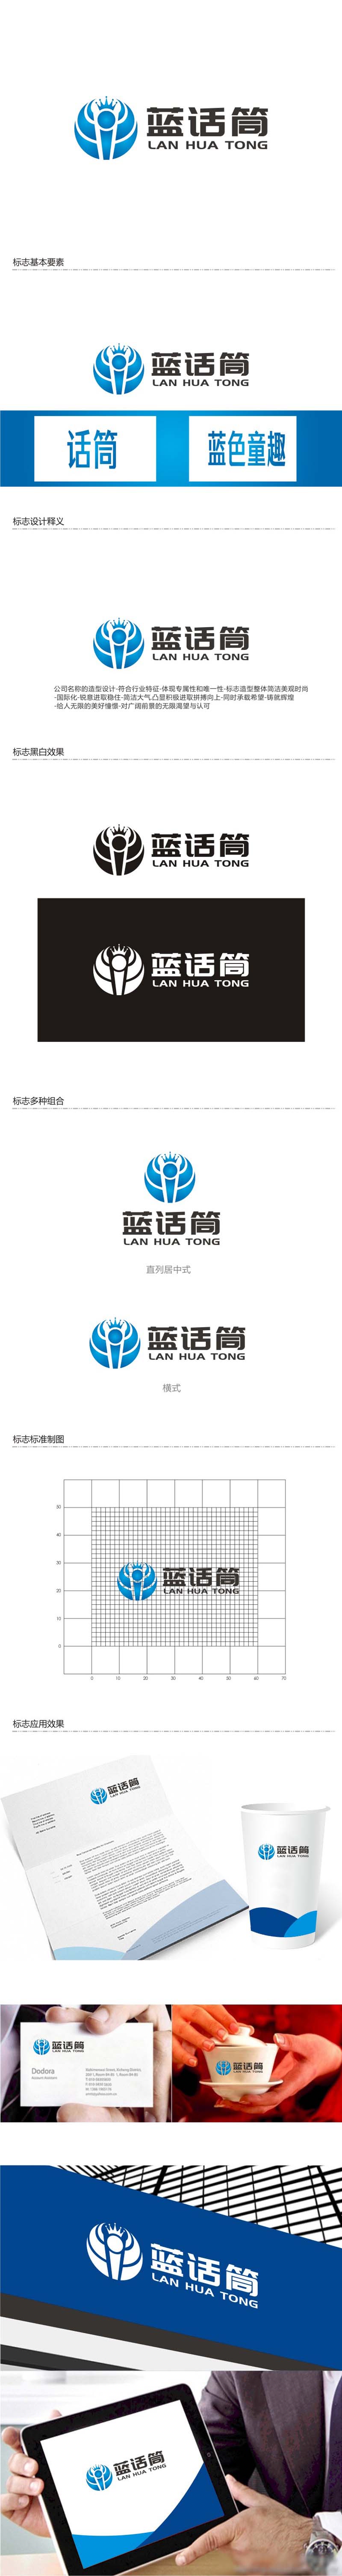 孙永炼的蓝话筒【重新整理设计需求】logo设计